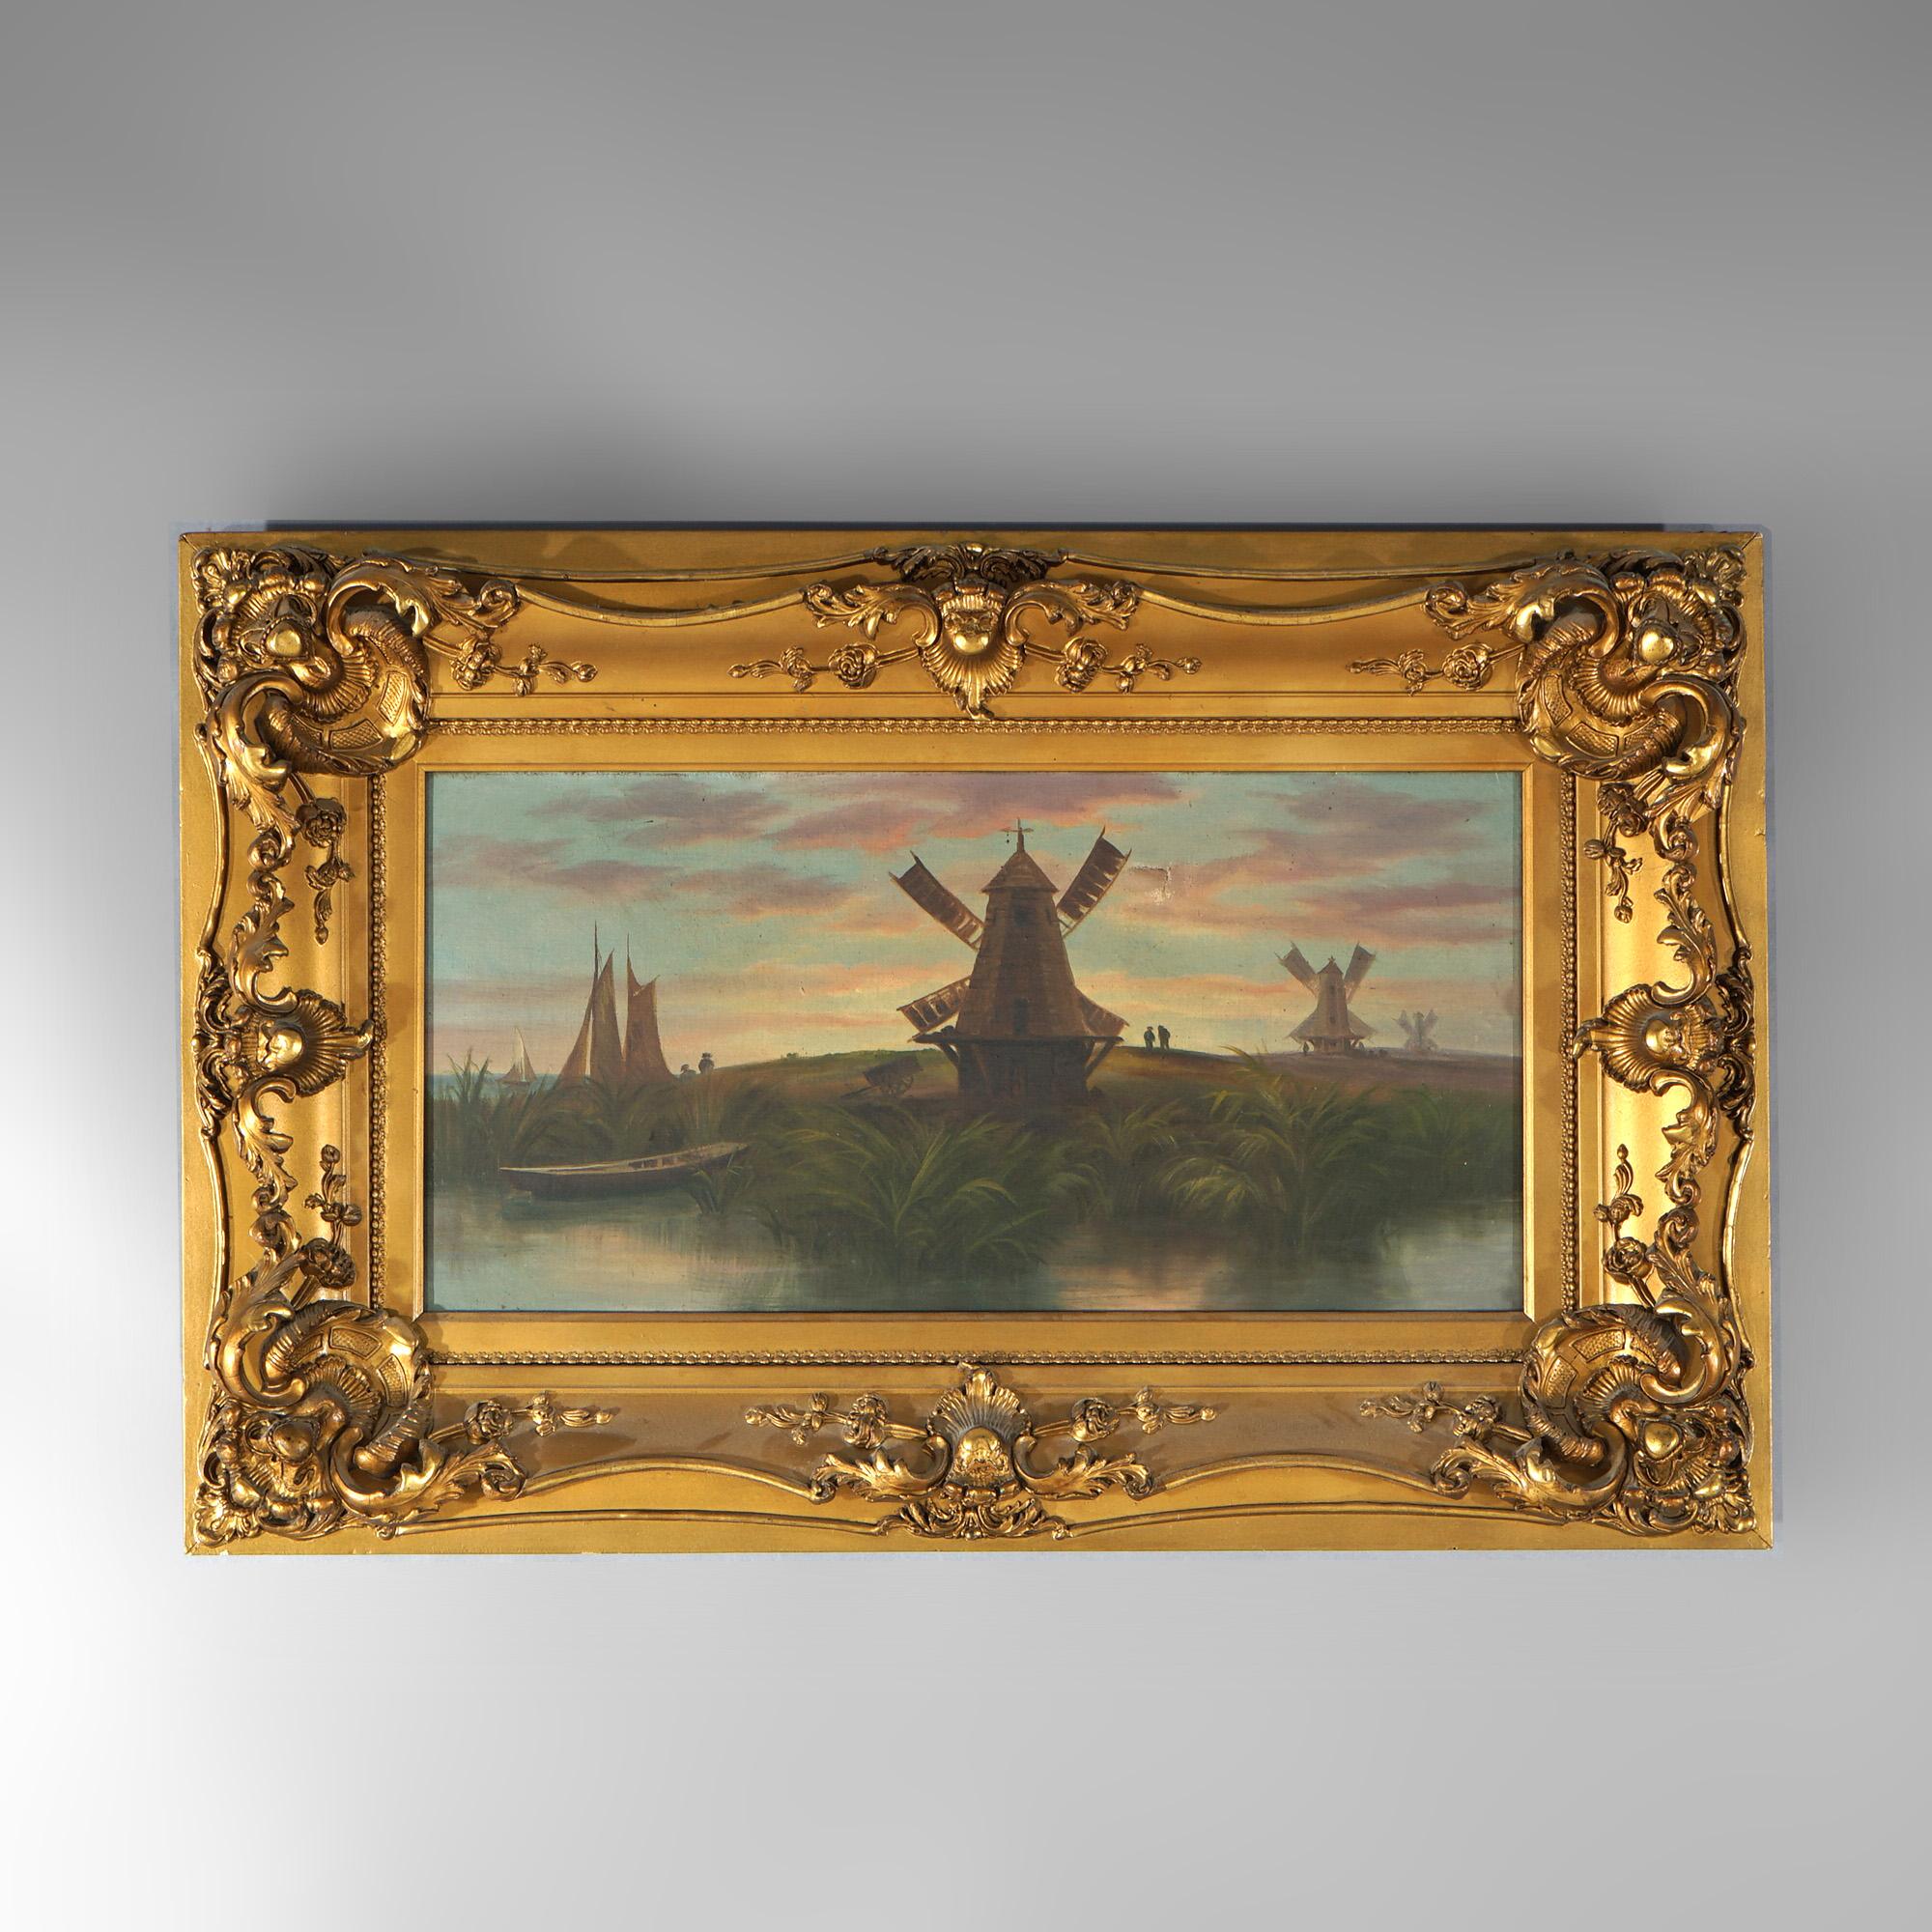 Une peinture hollandaise ancienne offre une scène de paysage à l'huile sur toile avec des moulins à vent, une voie d'eau et des bateaux, assis dans un cadre en bois doré, c1890

Dimensions - total 21,75 